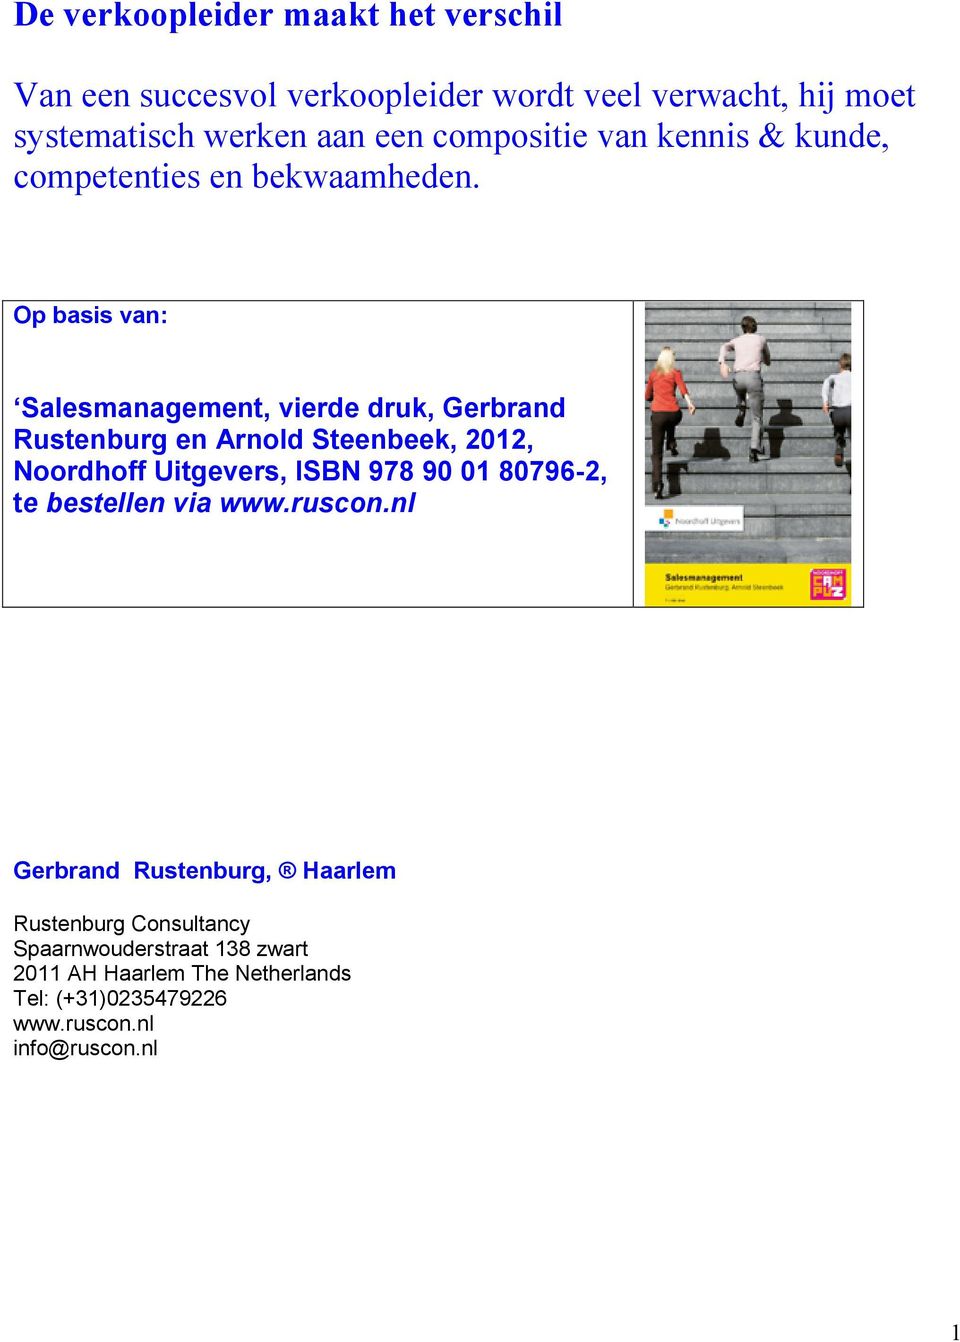 Op basis van: Salesmanagement, vierde druk, Gerbrand Rustenburg en Arnold Steenbeek, 2012, Noordhoff Uitgevers, ISBN 978 90 01